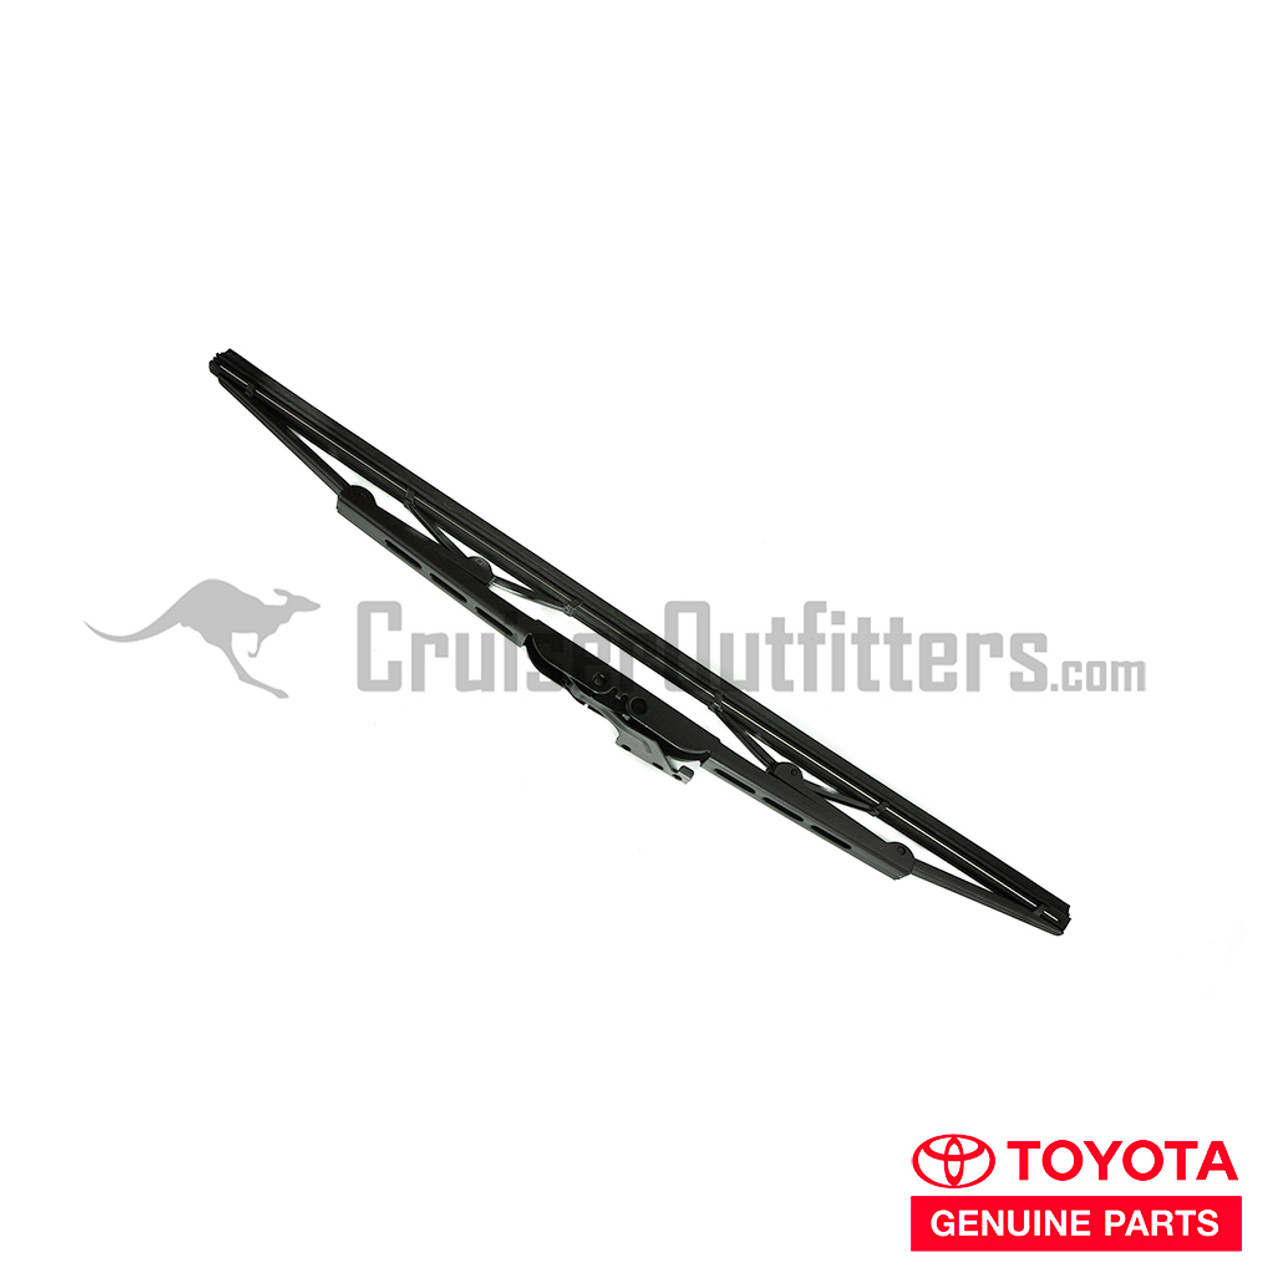 Wiper Blade - OEM Toyota - Fits 400mm (WIPBYZZ16)